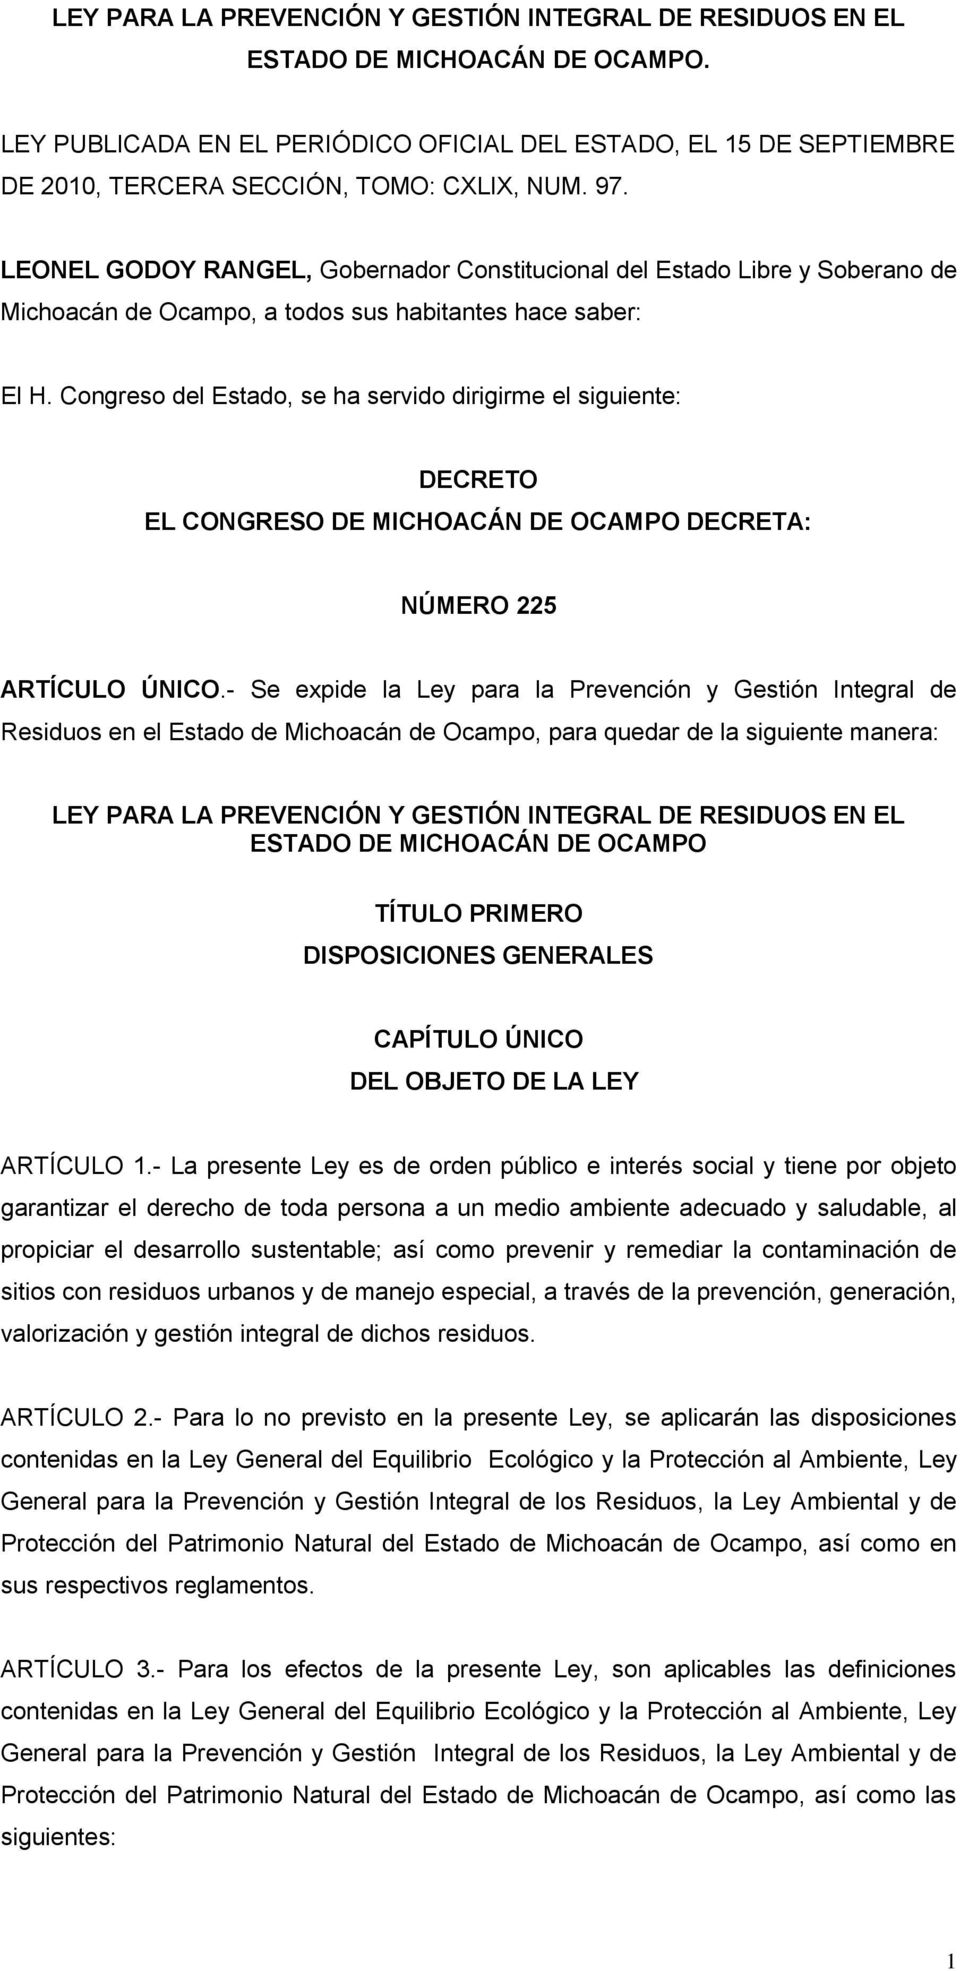 LEONEL GODOY RANGEL, Gobernador Constitucional del Estado Libre y Soberano de Michoacán de Ocampo, a todos sus habitantes hace saber: El H.